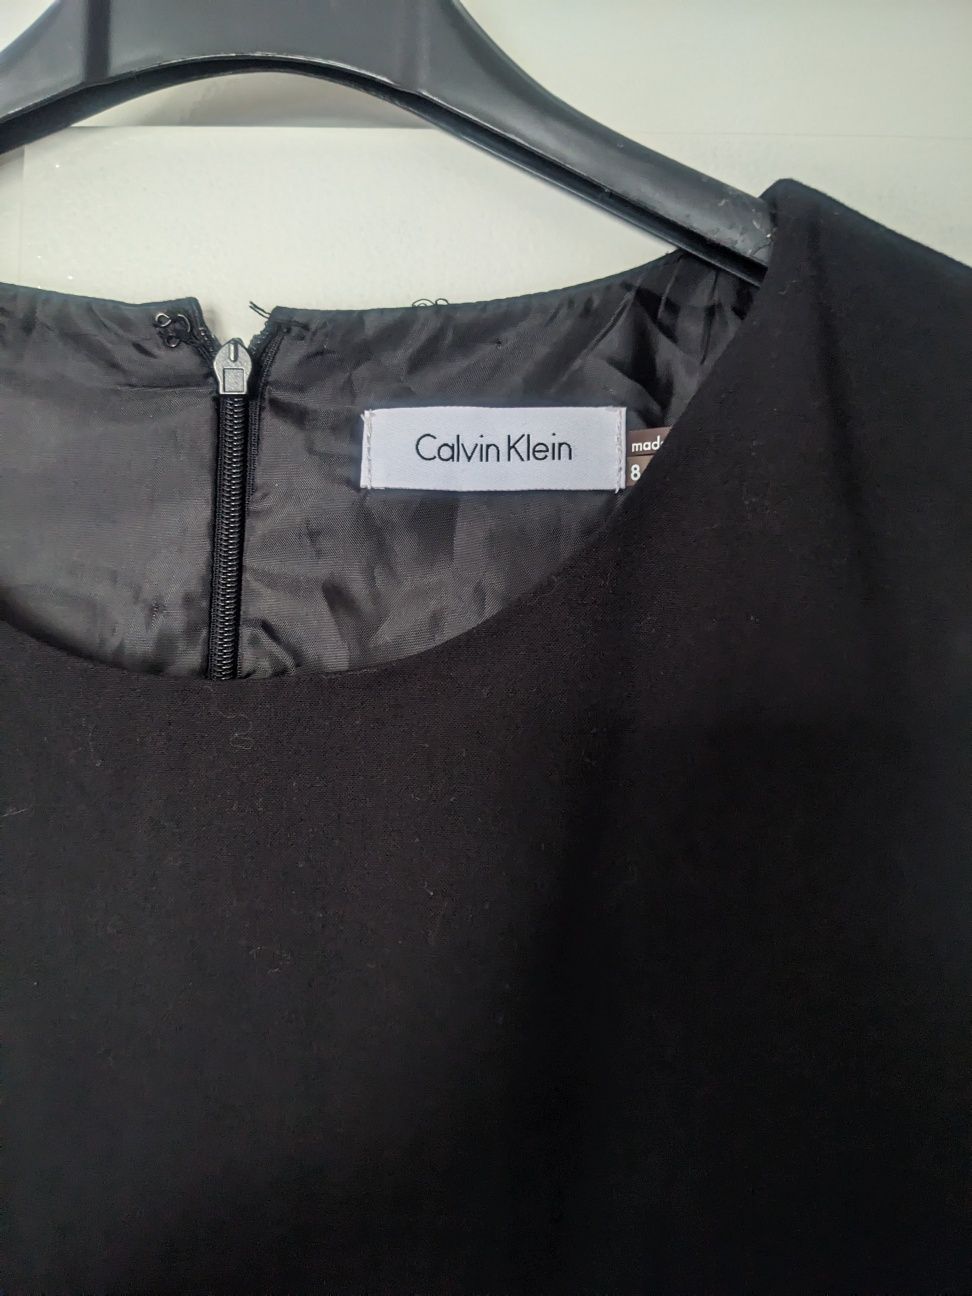 Sukienka Calvin klein mała czarna elegancka ołówkowa prosta dopasowana